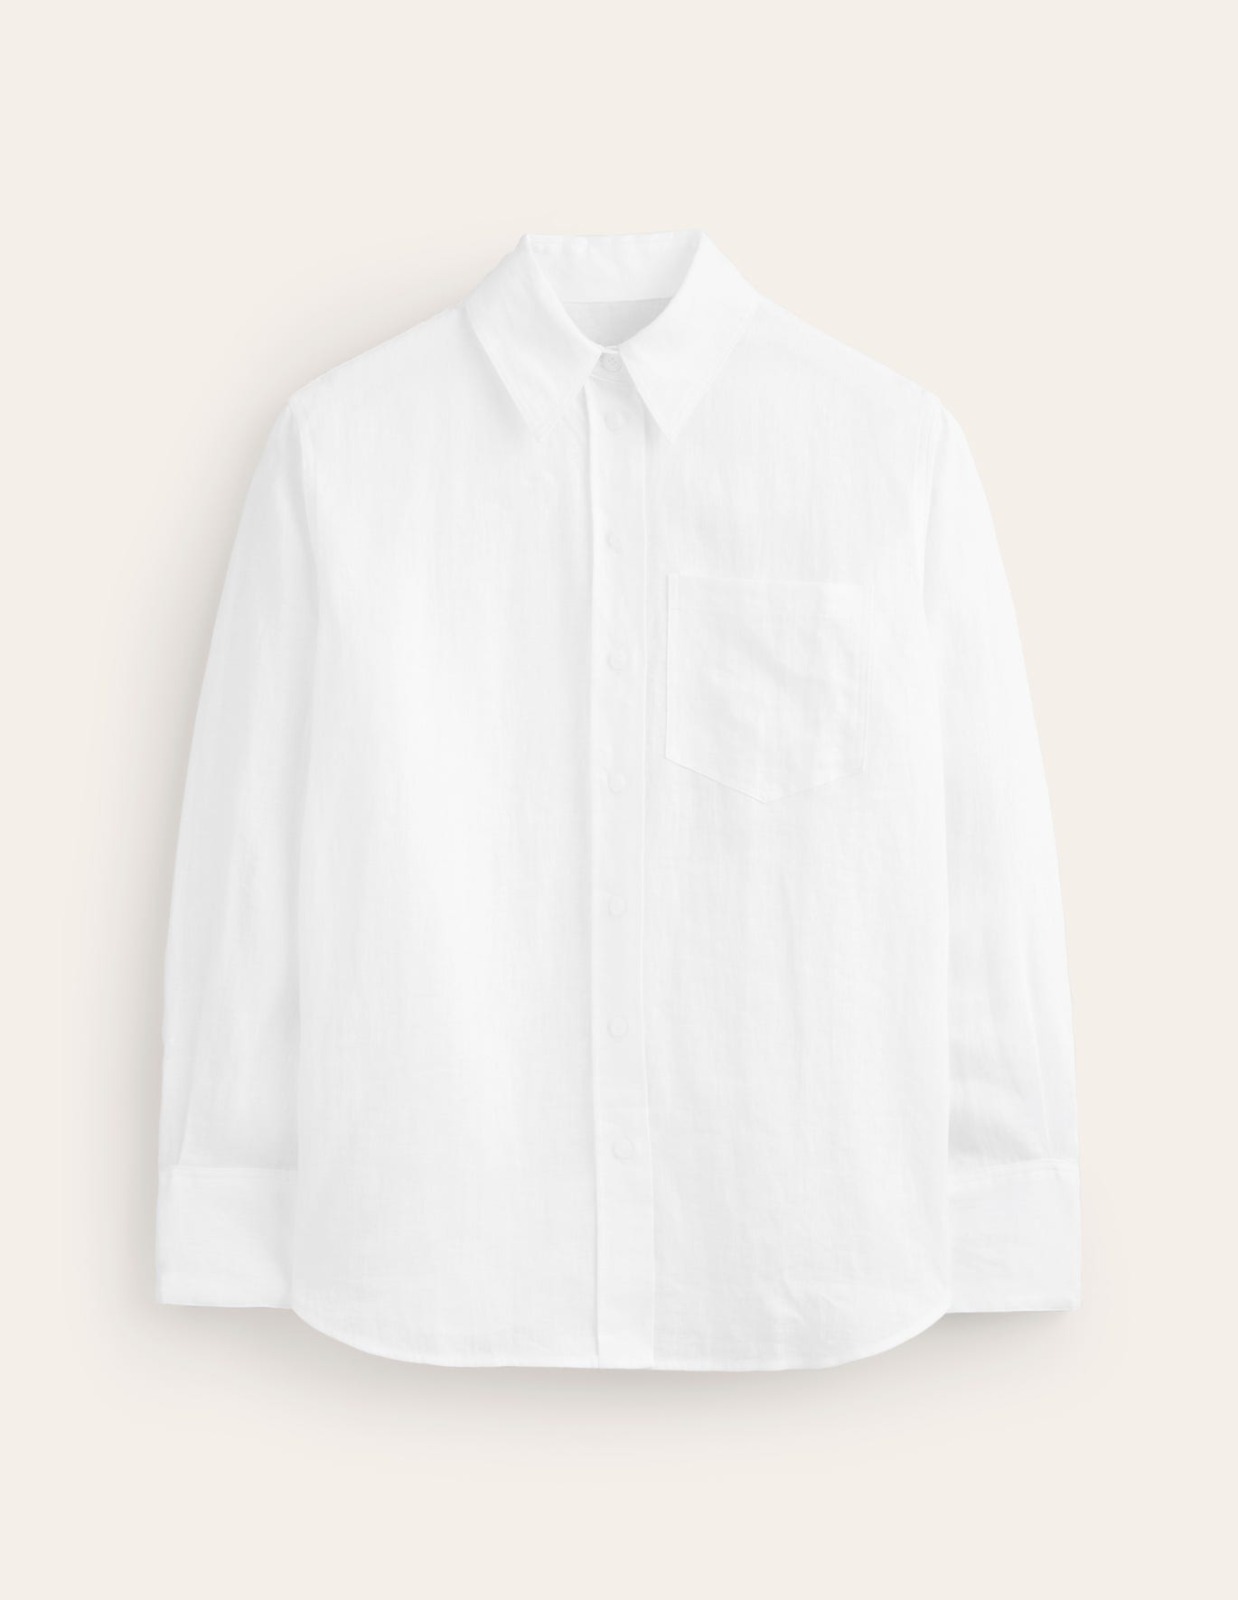 Boden - White Ladies Shirt GOOFASH